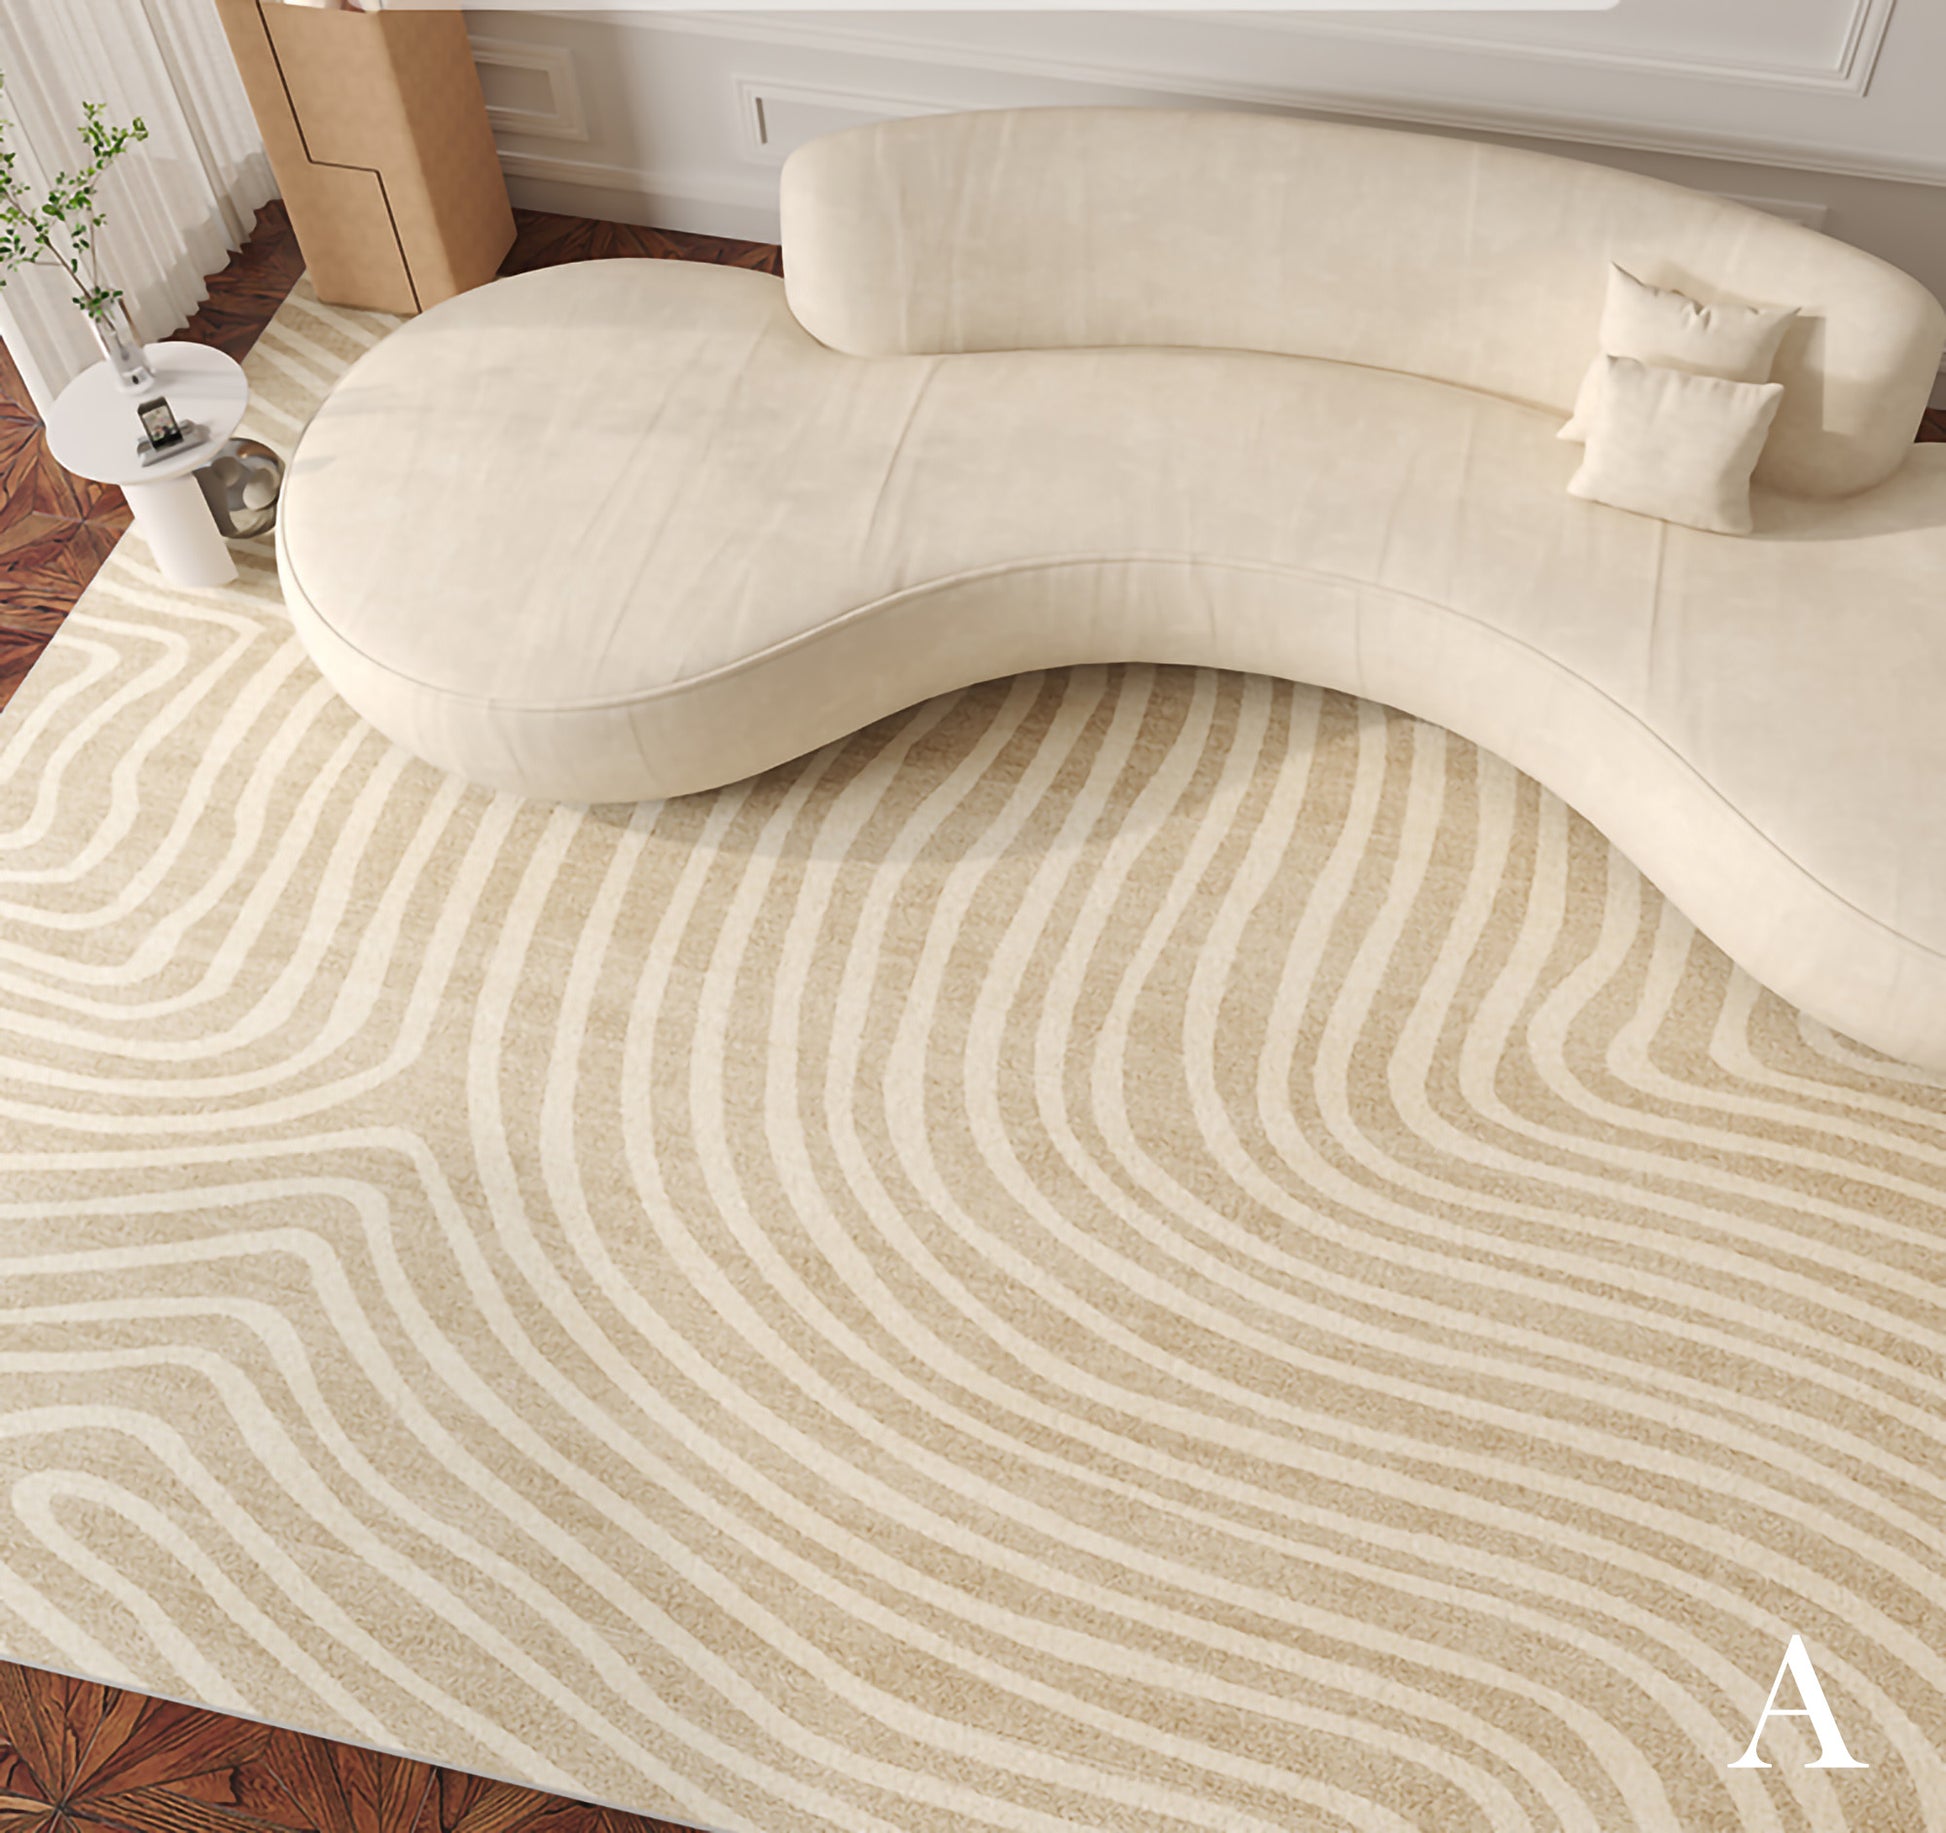 Modern Boho Line Carpet, Neutral Tone Beige Rugs for Bedroom / Living Room decoration Besontique 